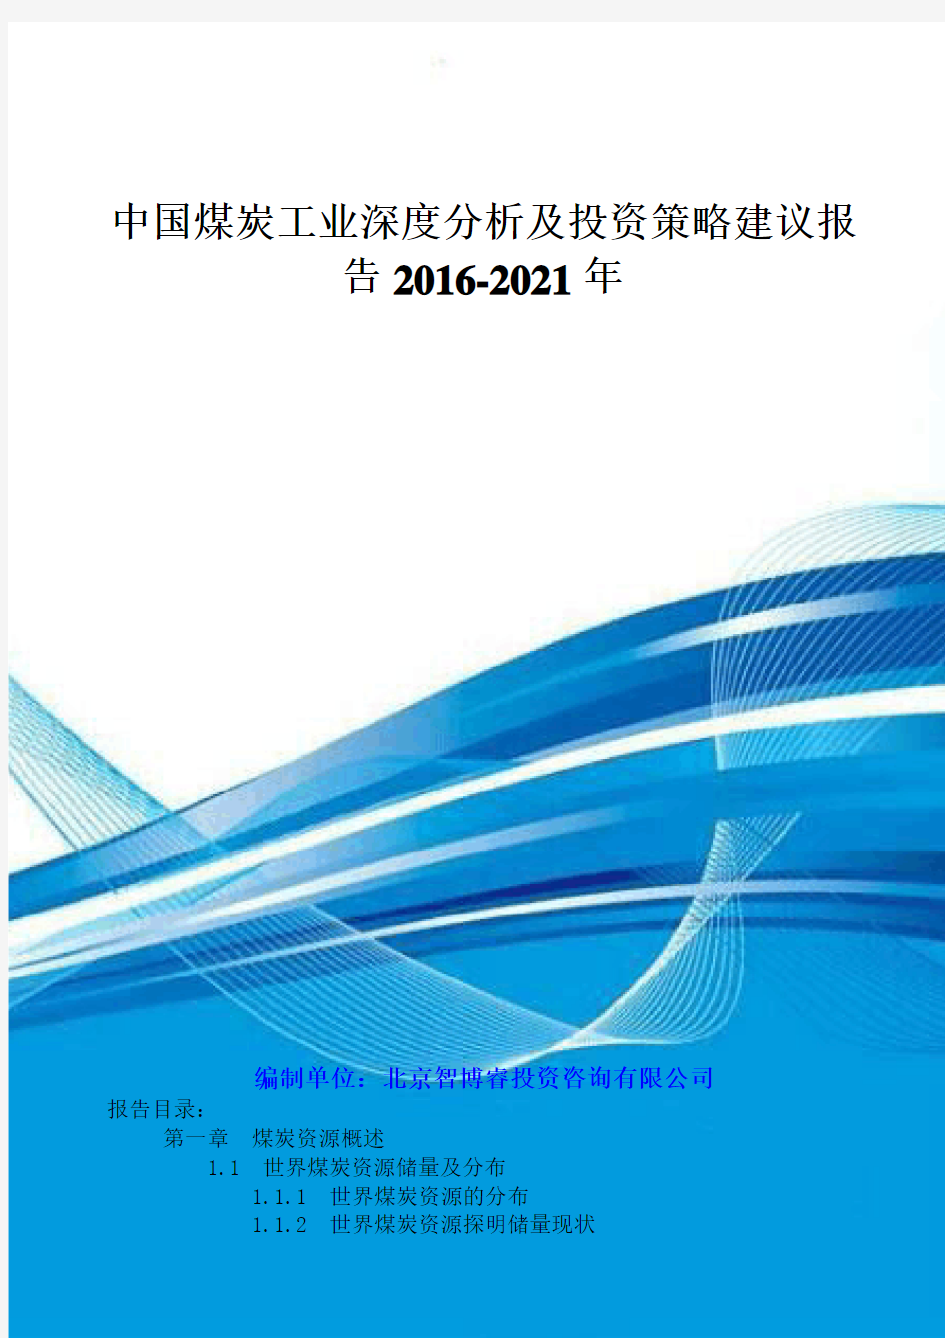 中国煤炭工业深度分析及投资策略建议报告XXXX-2021年